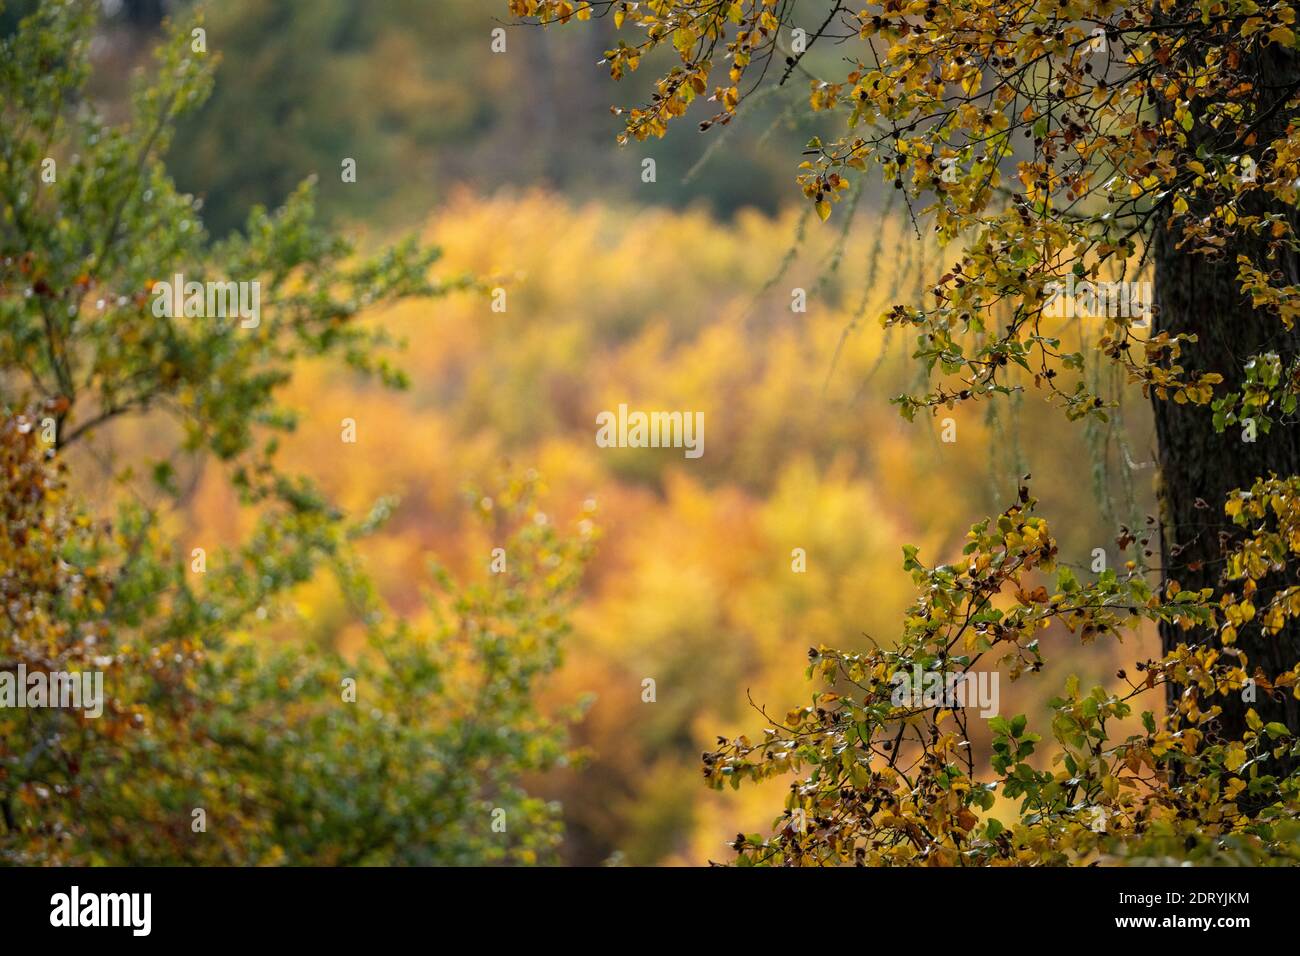 Blick auf einen Wald in Herbstsonne mit Laubbäumen und Blättern in schönen gelben und roten Farben, taunus, deutschland Stockfoto